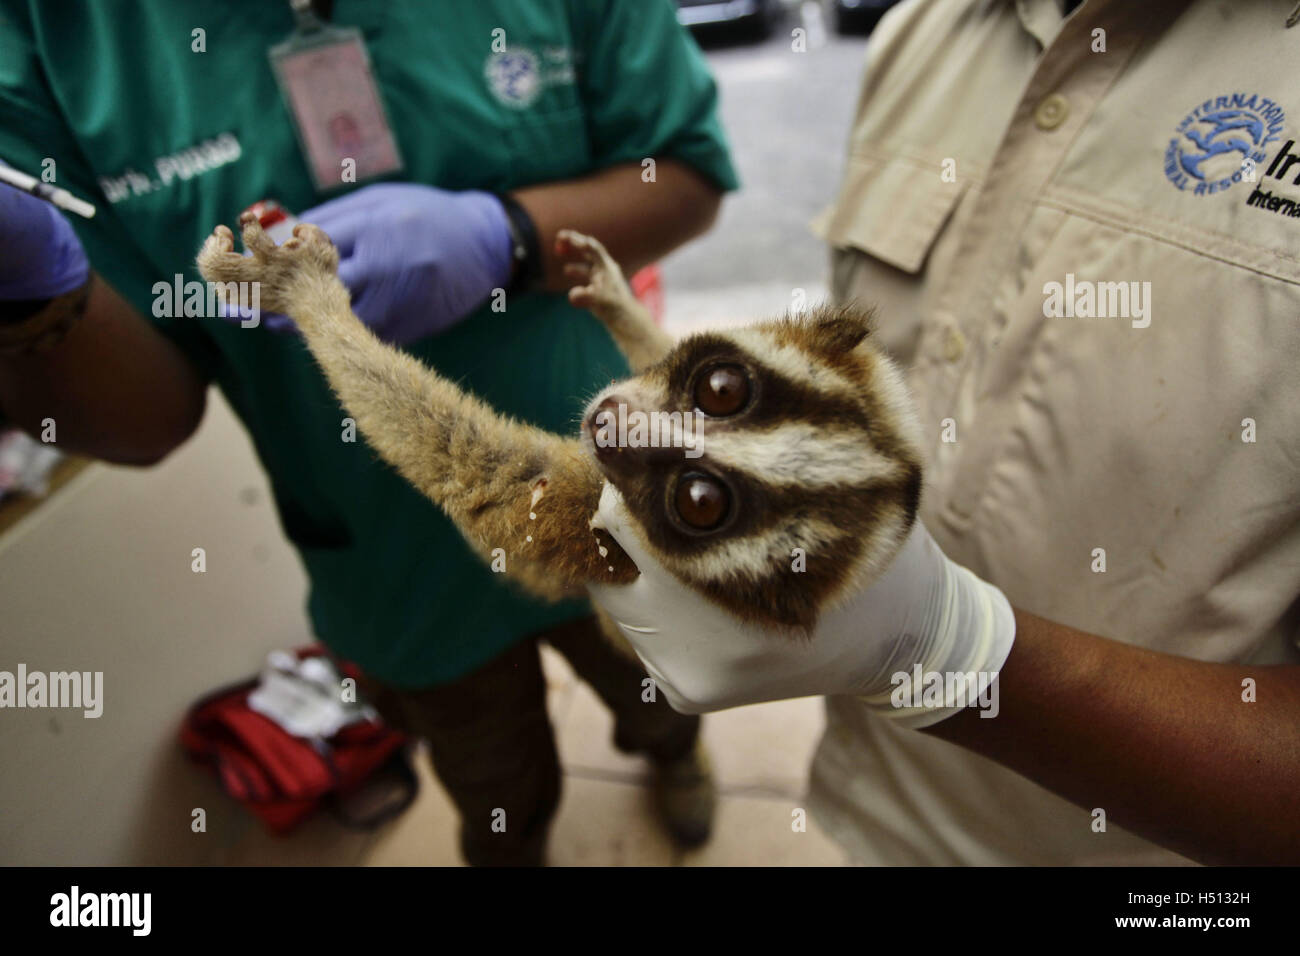 Bandung, Indonésie. 18 Oct, 2016. Un Javan loris lent reçoit un traitement médical par les médecins de l'International Animal Rescue (IRA) après avoir été sauvé de la contrebande dans la région de Bandung, Indonésie, le 18 octobre 2016. Le Javan loris lent est l'une des espèces les plus menacées. © Banyu Biru/Xinhua/Alamy Live News Banque D'Images